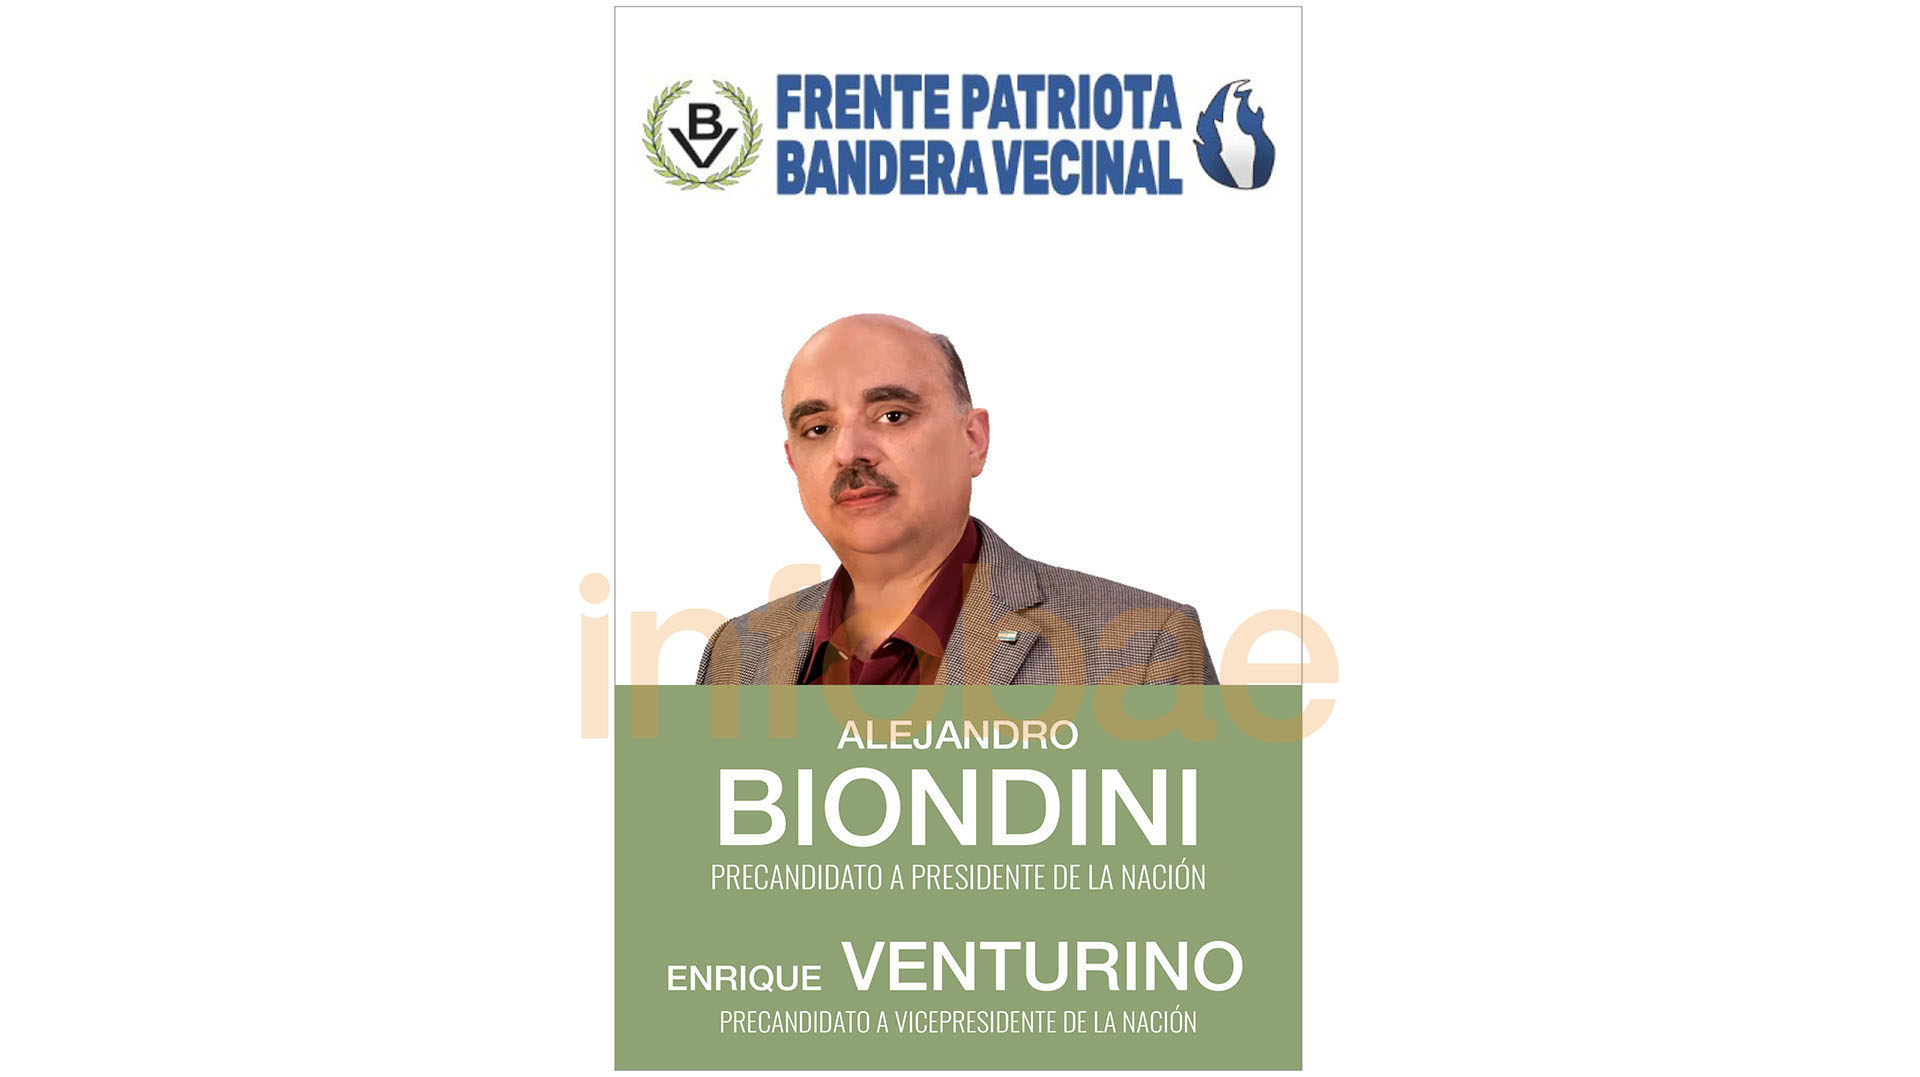 La boleta de Alejandro Biondini en las PASO del 2019